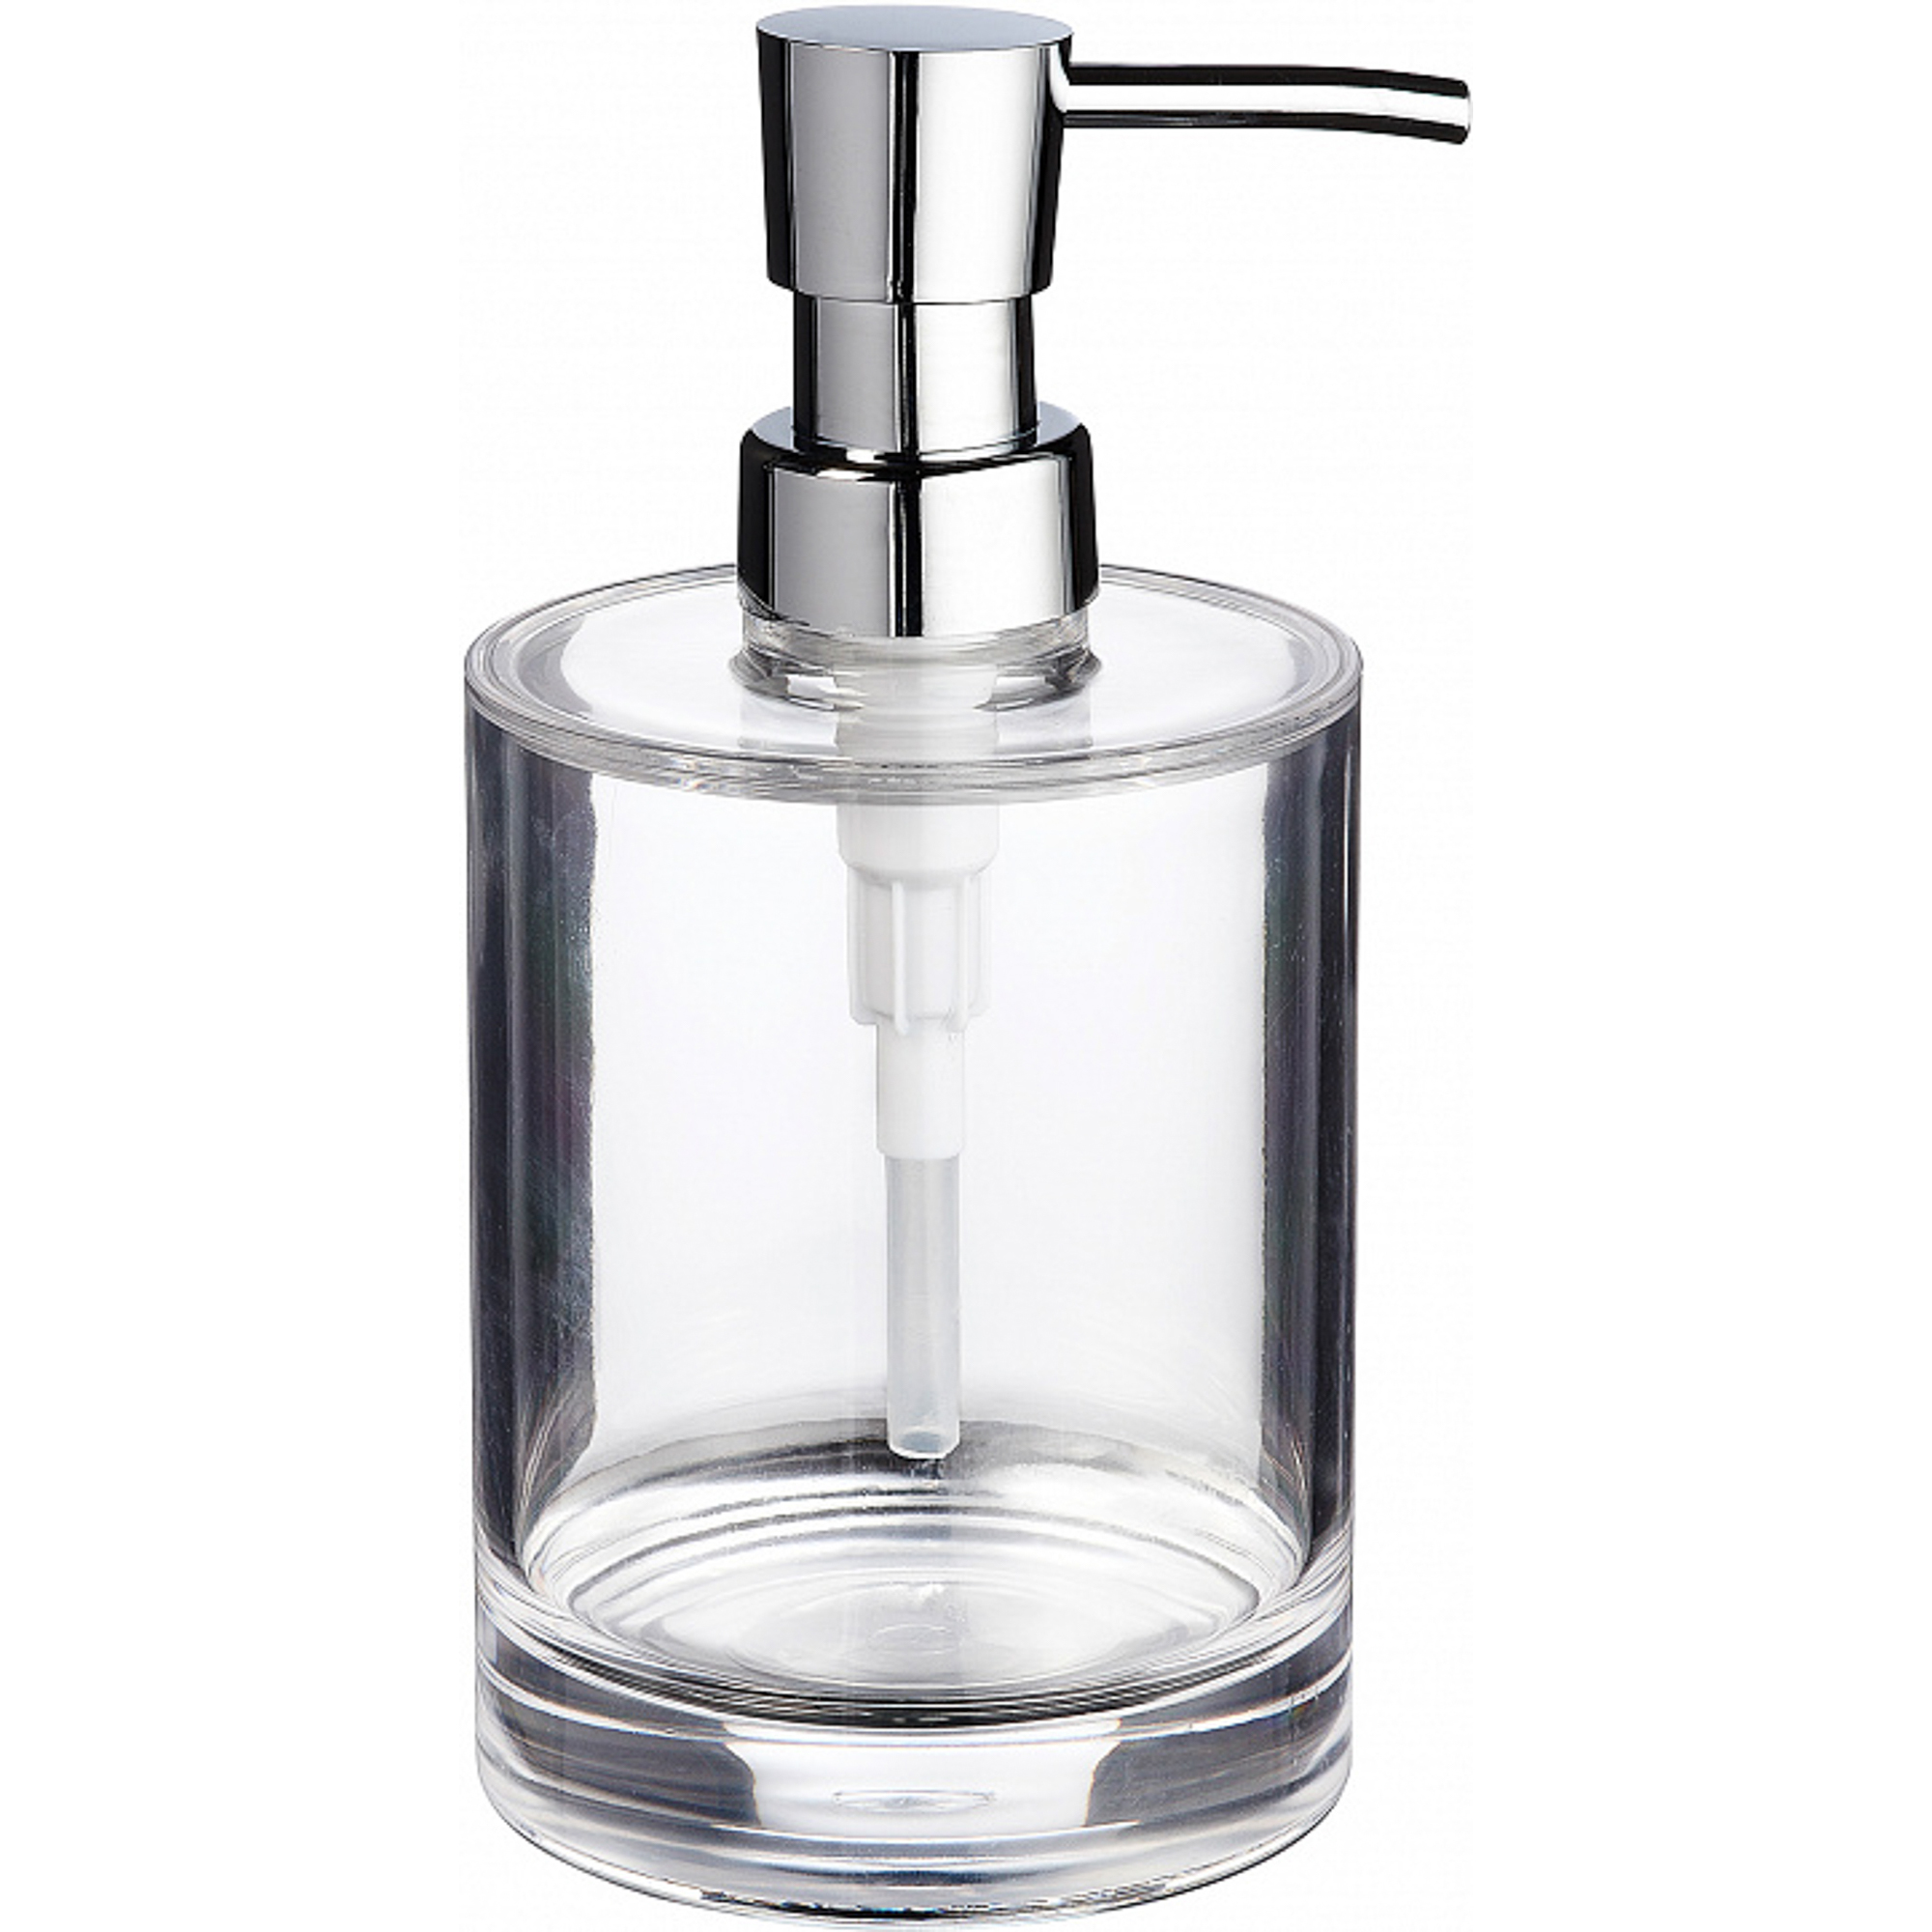 дозатор для мыла ridder windows прозрачно серый 9х15 8 см Дозатор для жидкого мыла Windows прозрачный Ridder